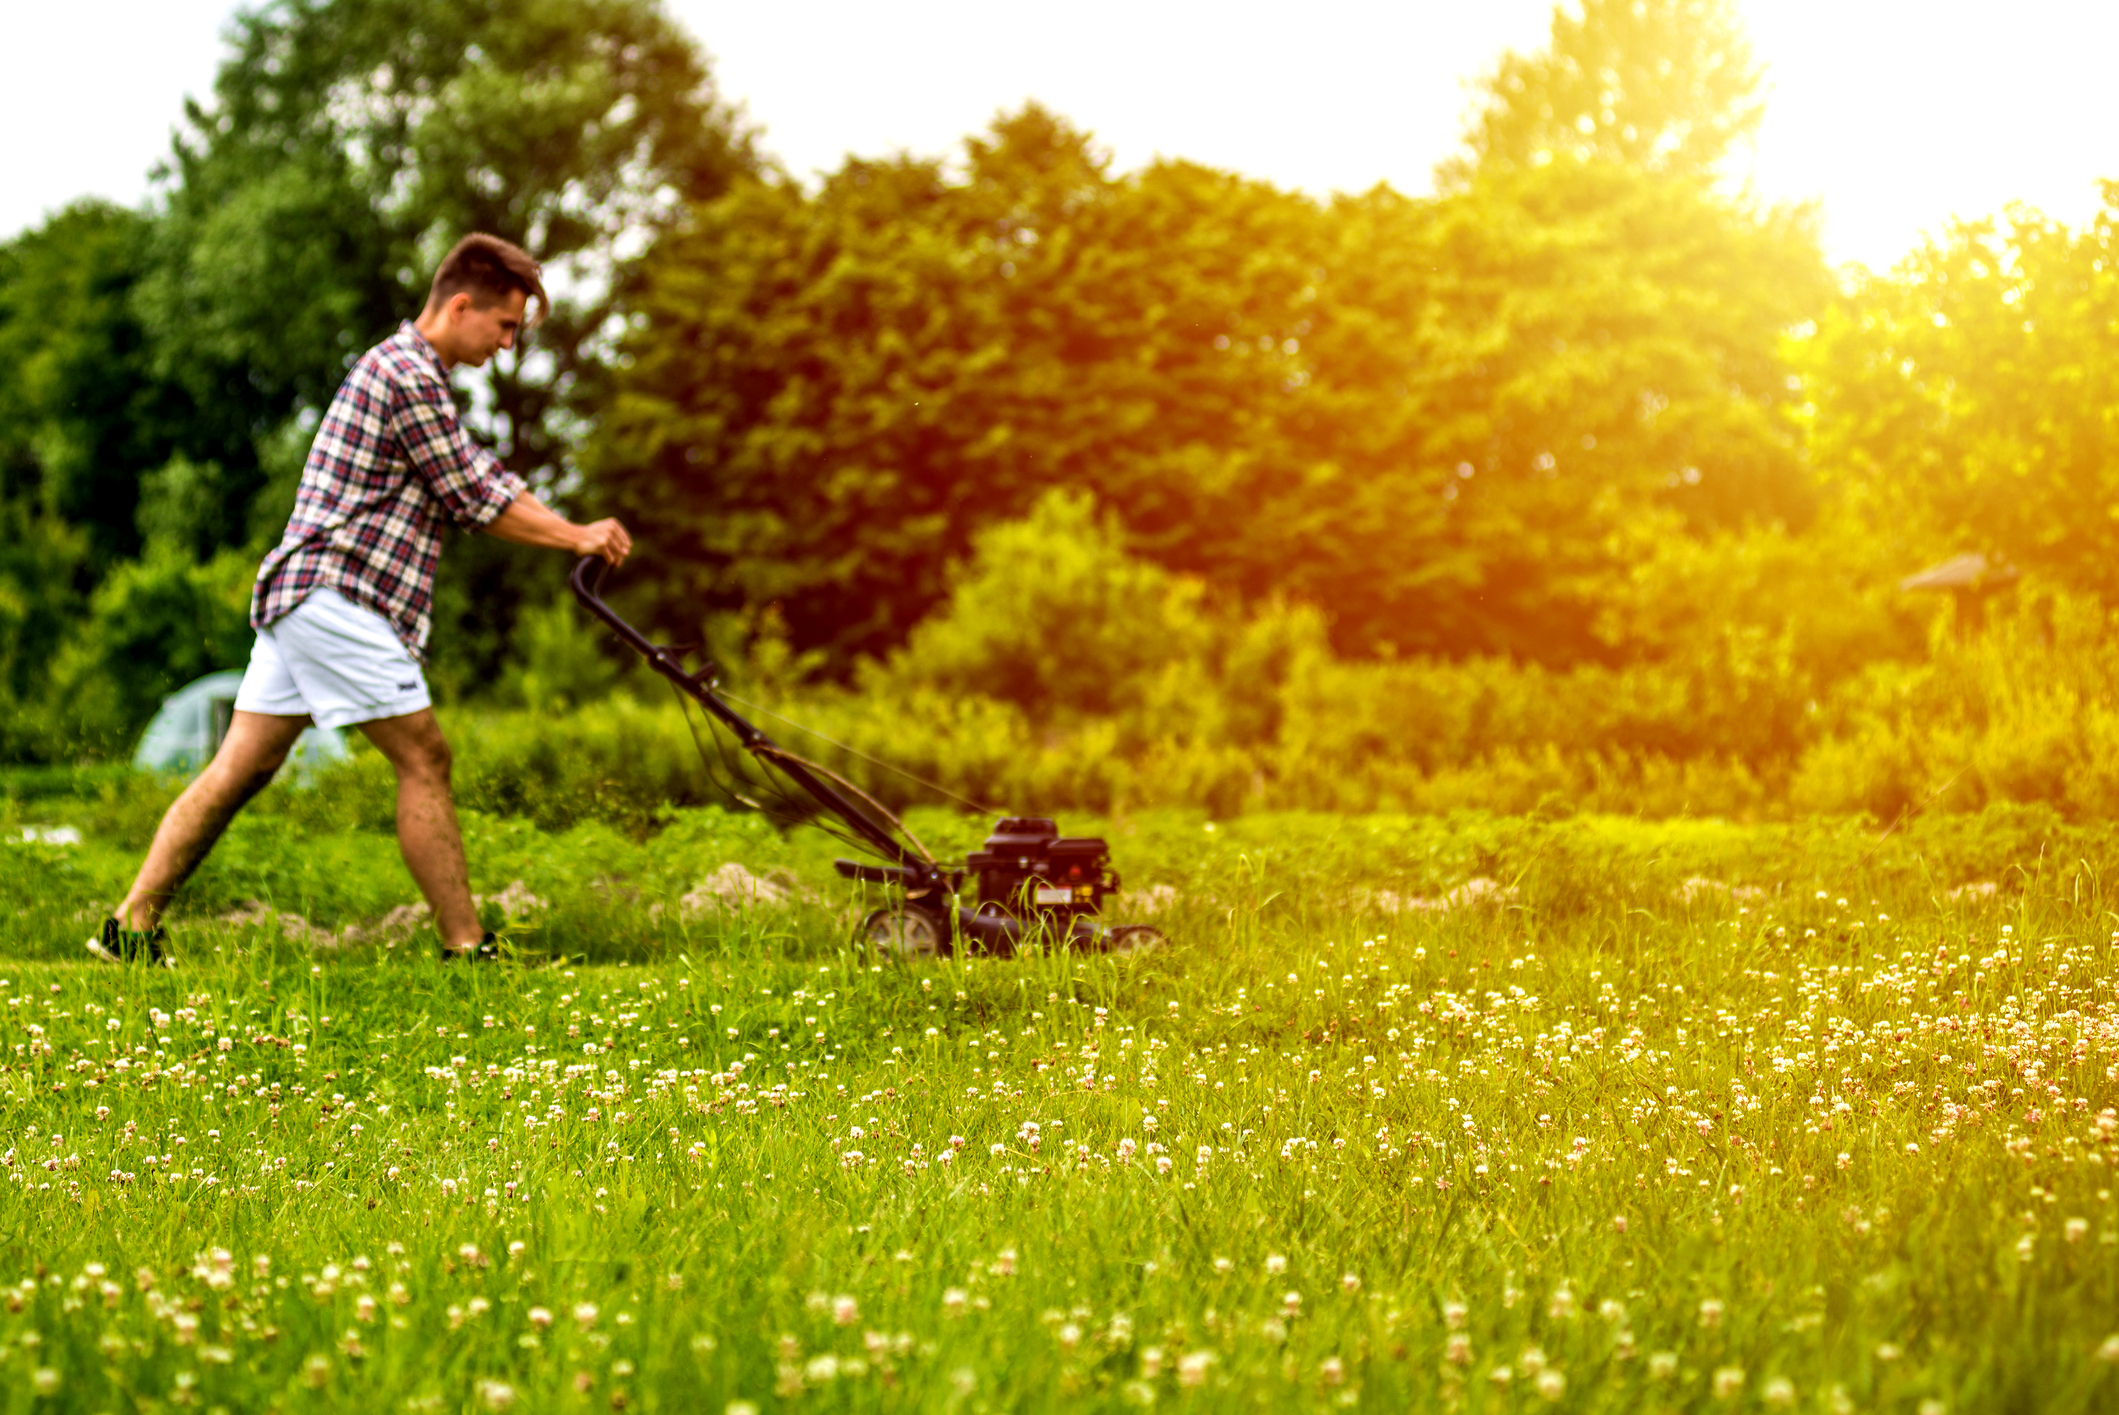 A man mowing grass.